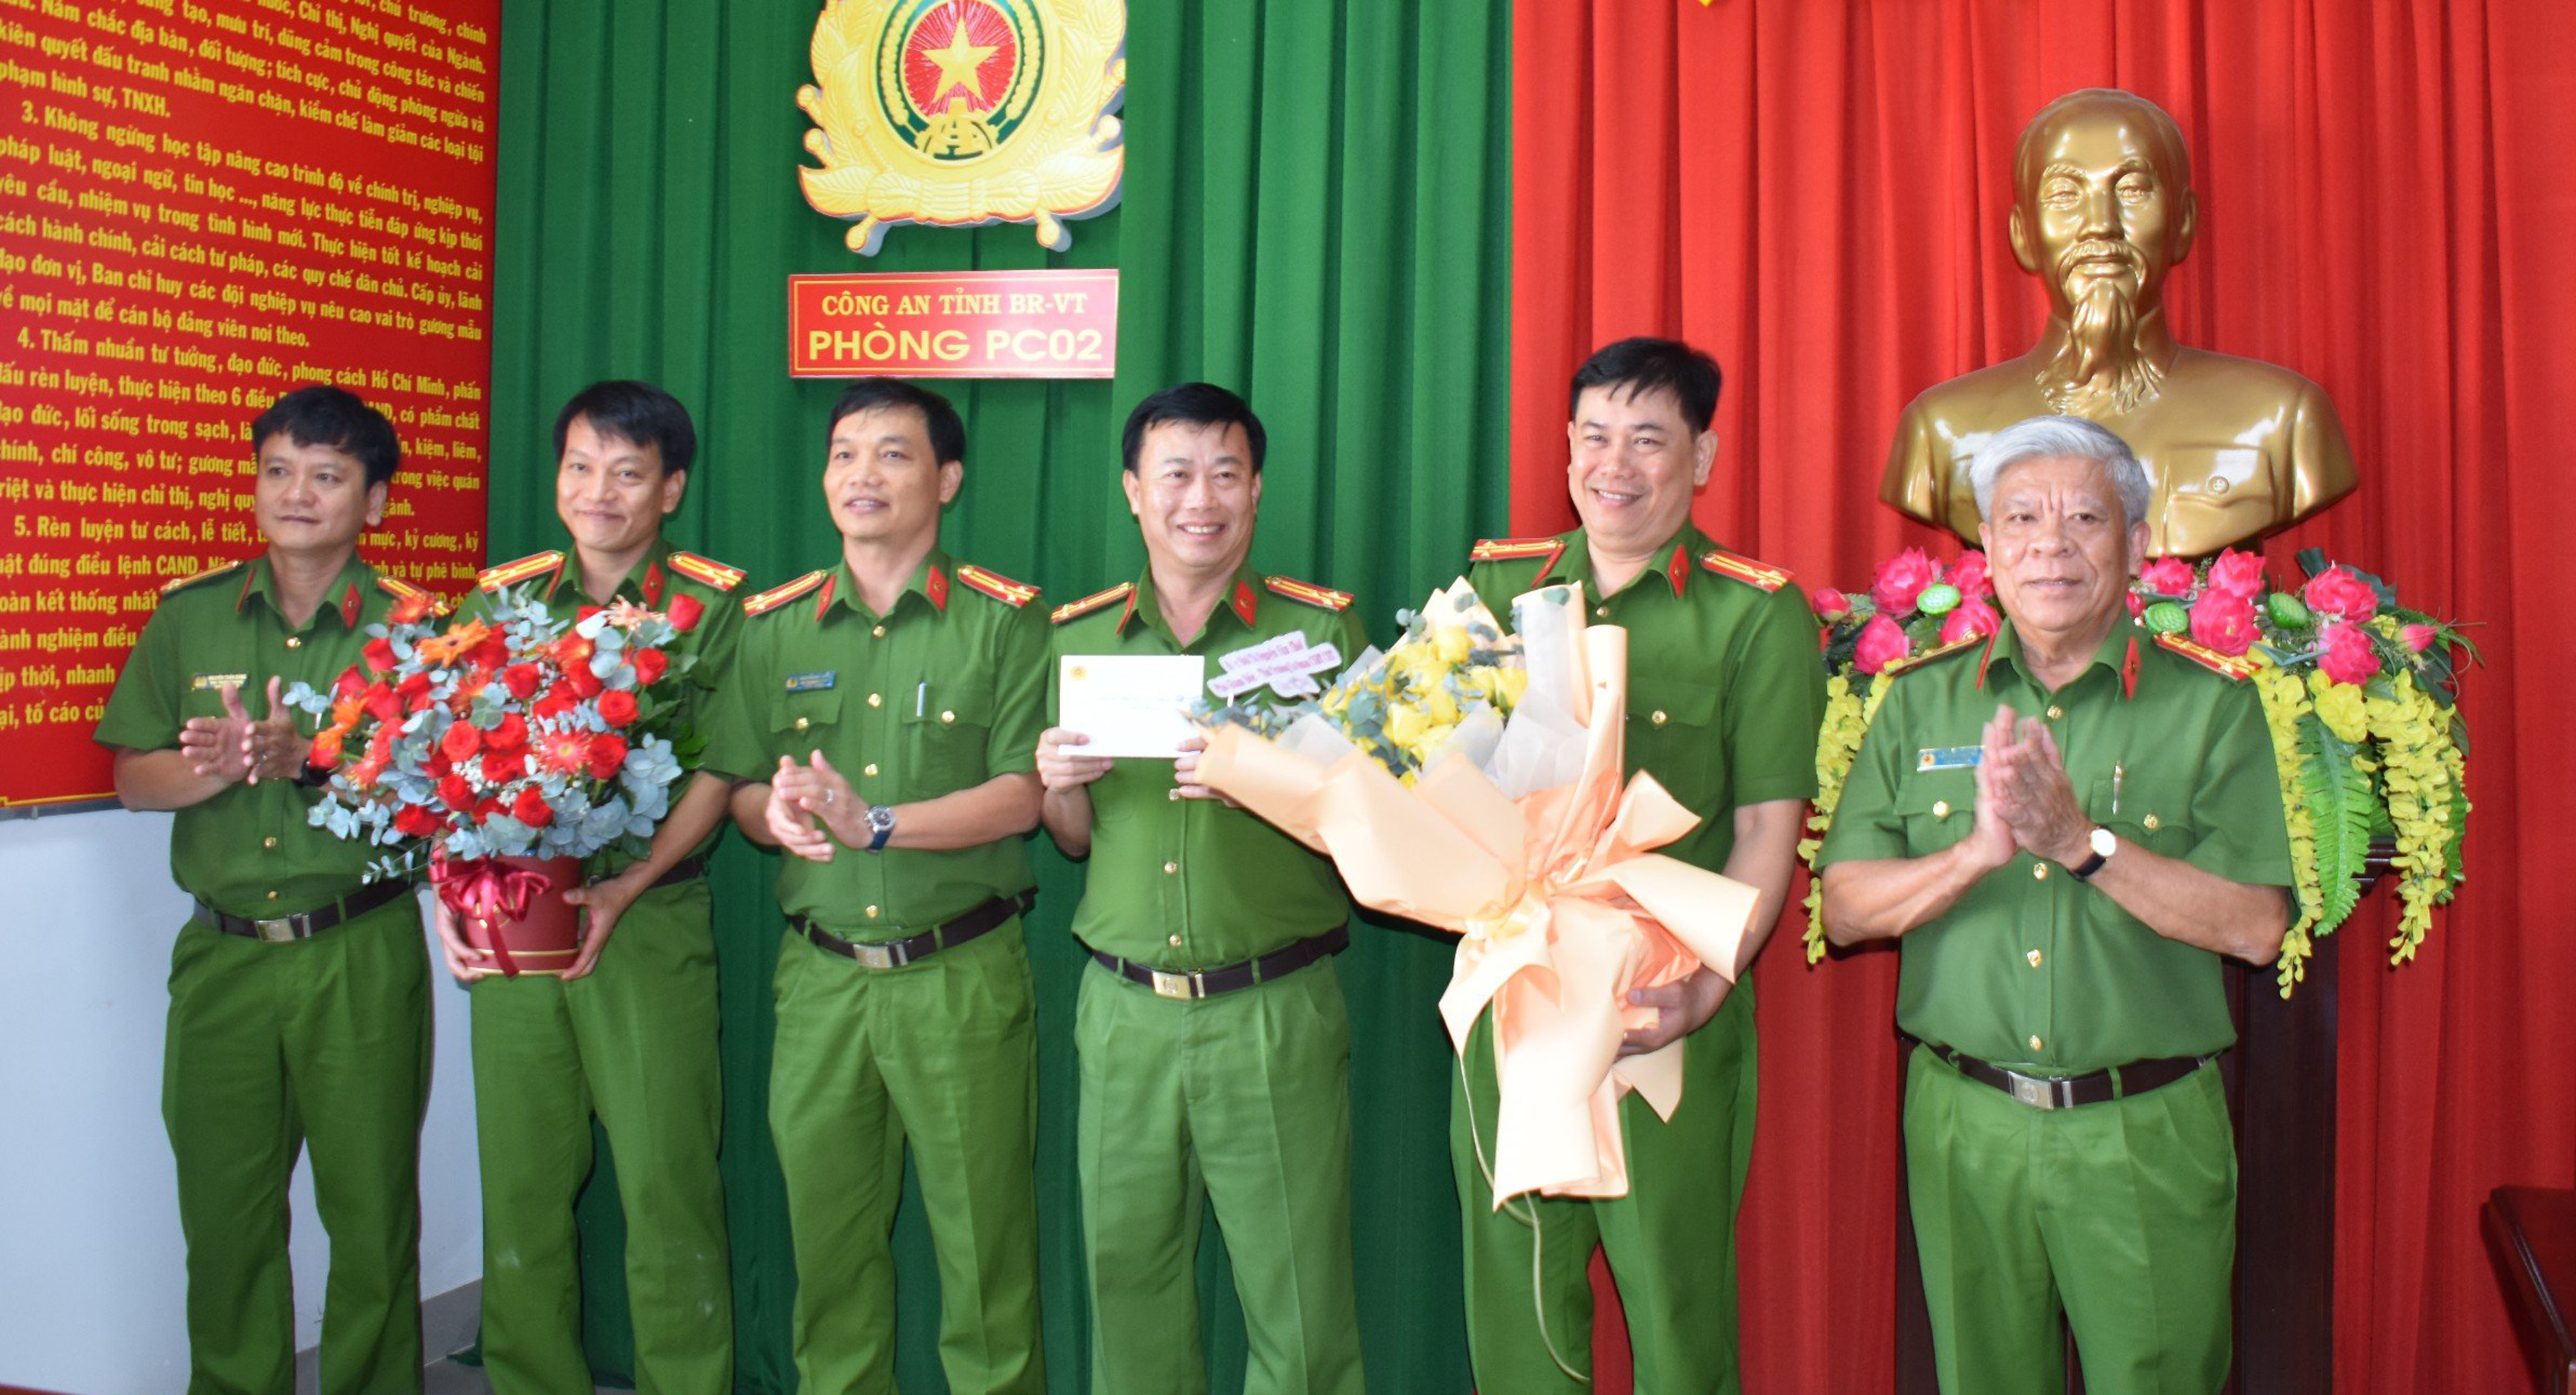 Đại tá Nguyễn Văn Thời, Phó Giám đốc Công an tỉnh đã ân cần thăm hỏi, biểu dương và tặng hoa chúc mừng CBCS Phòng CSHS 